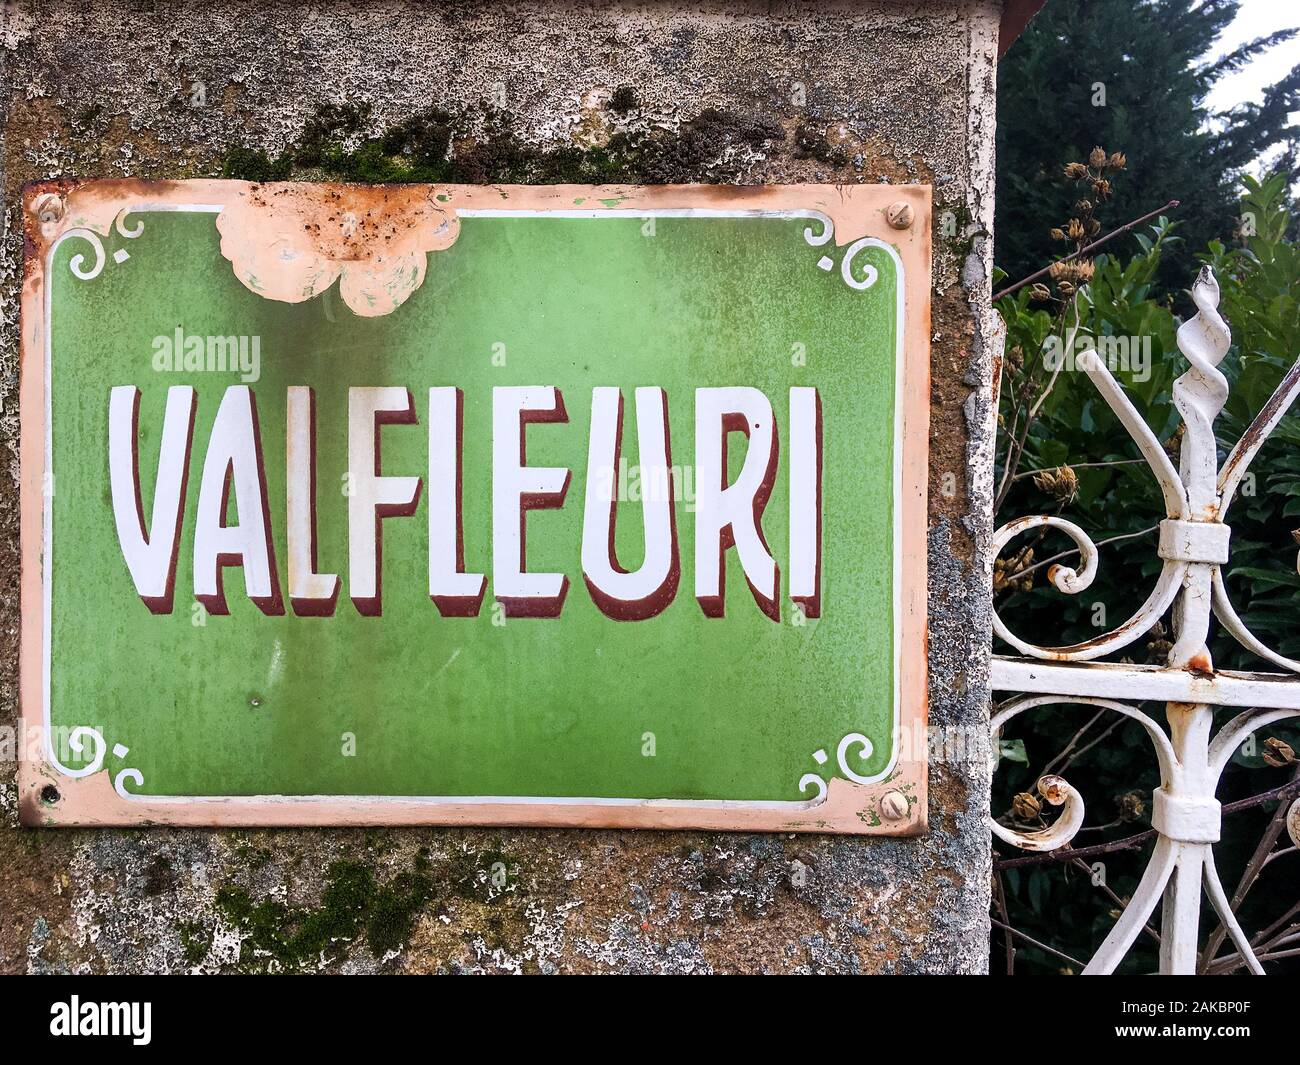 Valfleuri, Platte auf dem Pilar eines Einfamilienhauses Tür, Lyon, Frankreich Stockfoto